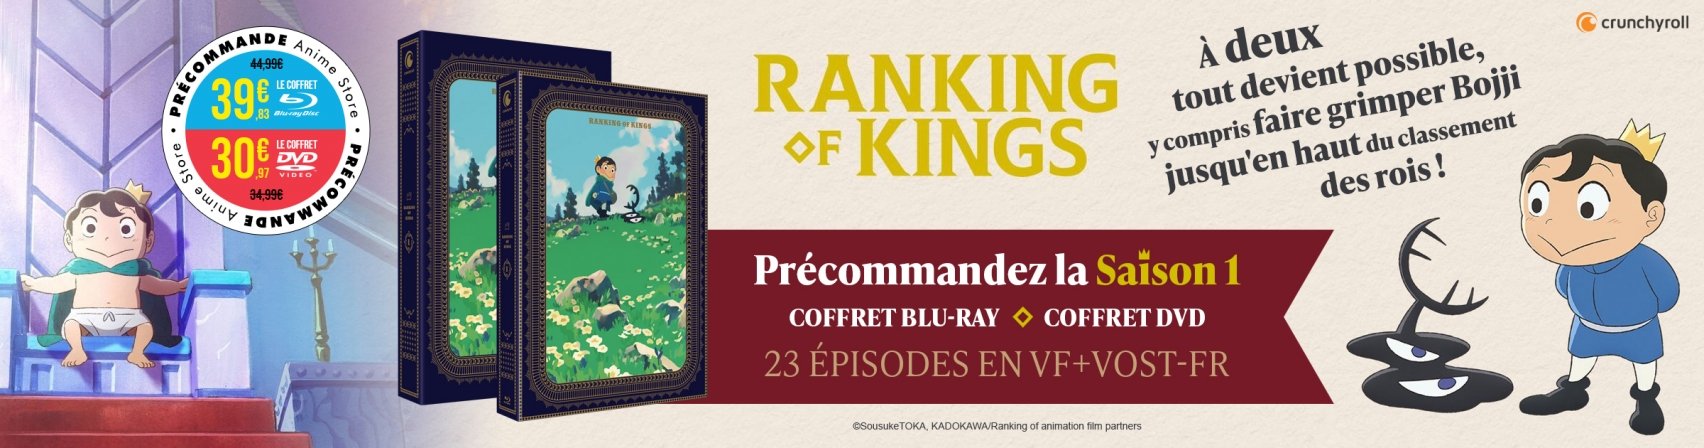 Prcommandez la saison 1 de Ranking of Kings